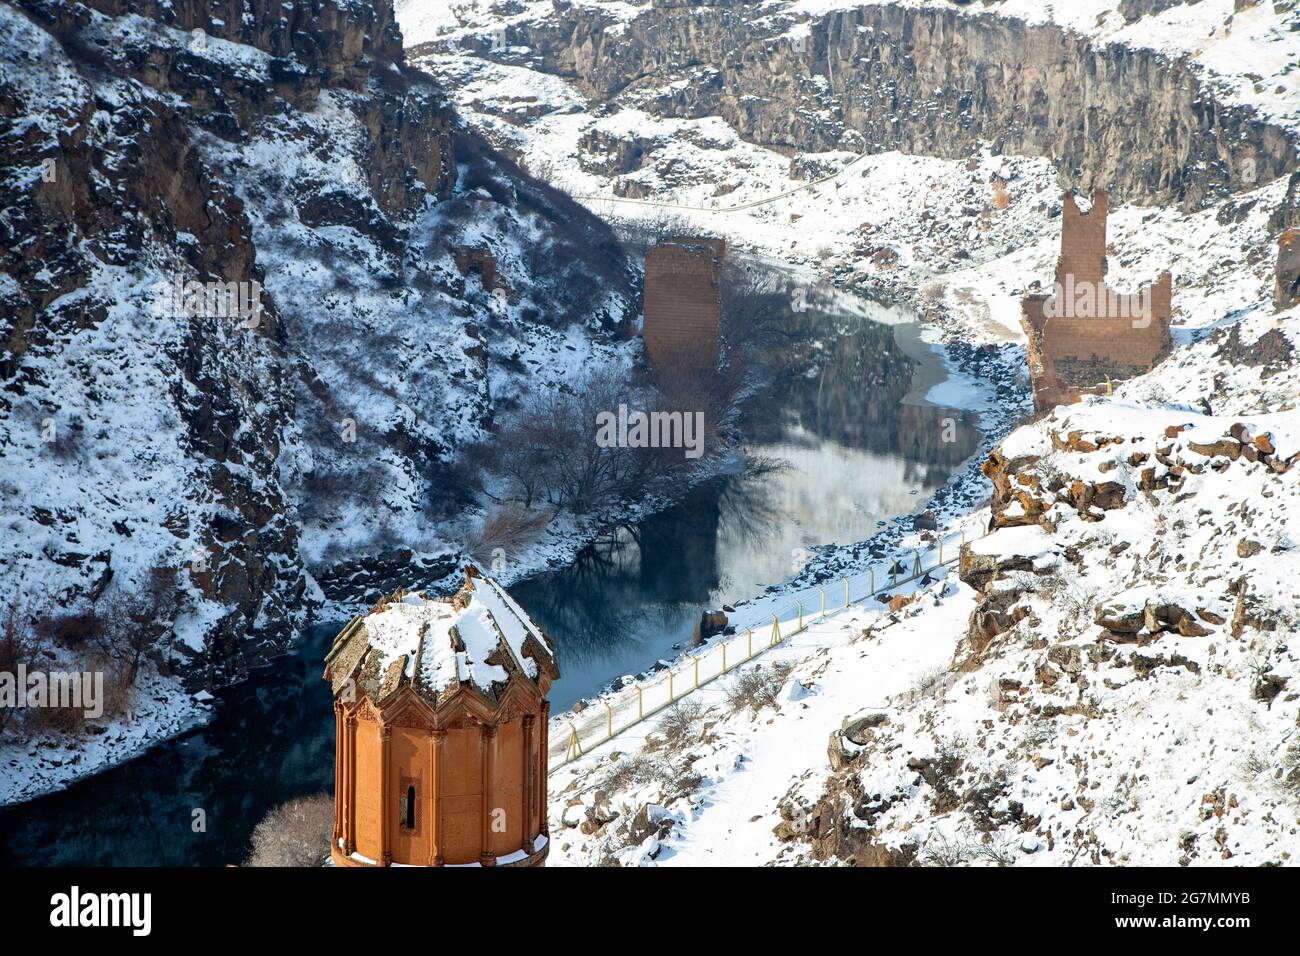 Ruinas de Ani, Ani es una ciudad Armenia medieval arruinada y deshabitada situada en la provincia turca de Kars Foto de stock